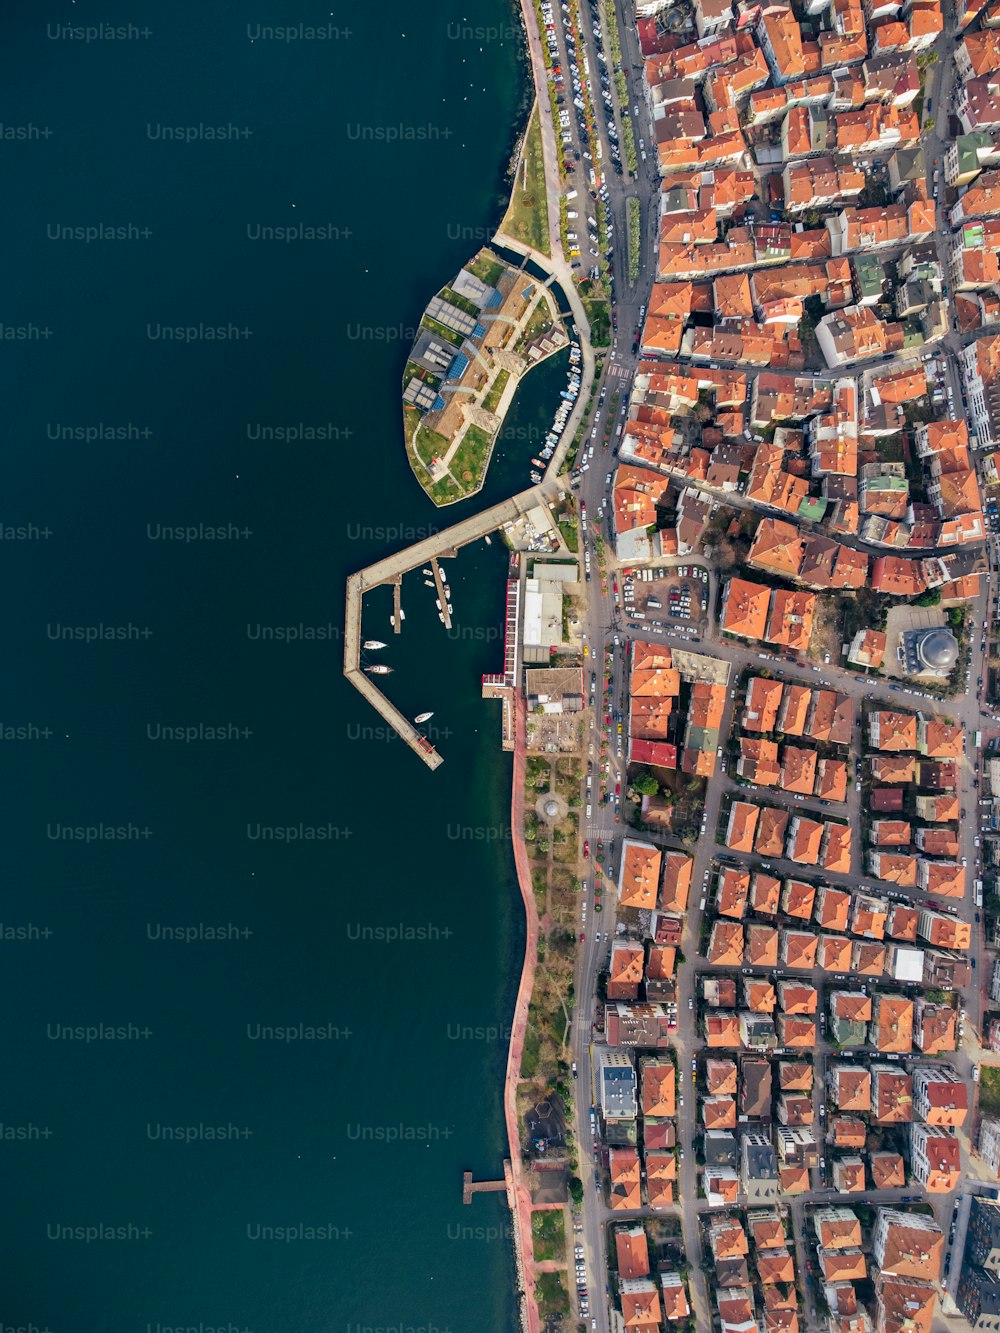 a bird's eye view of a city next to a body of water